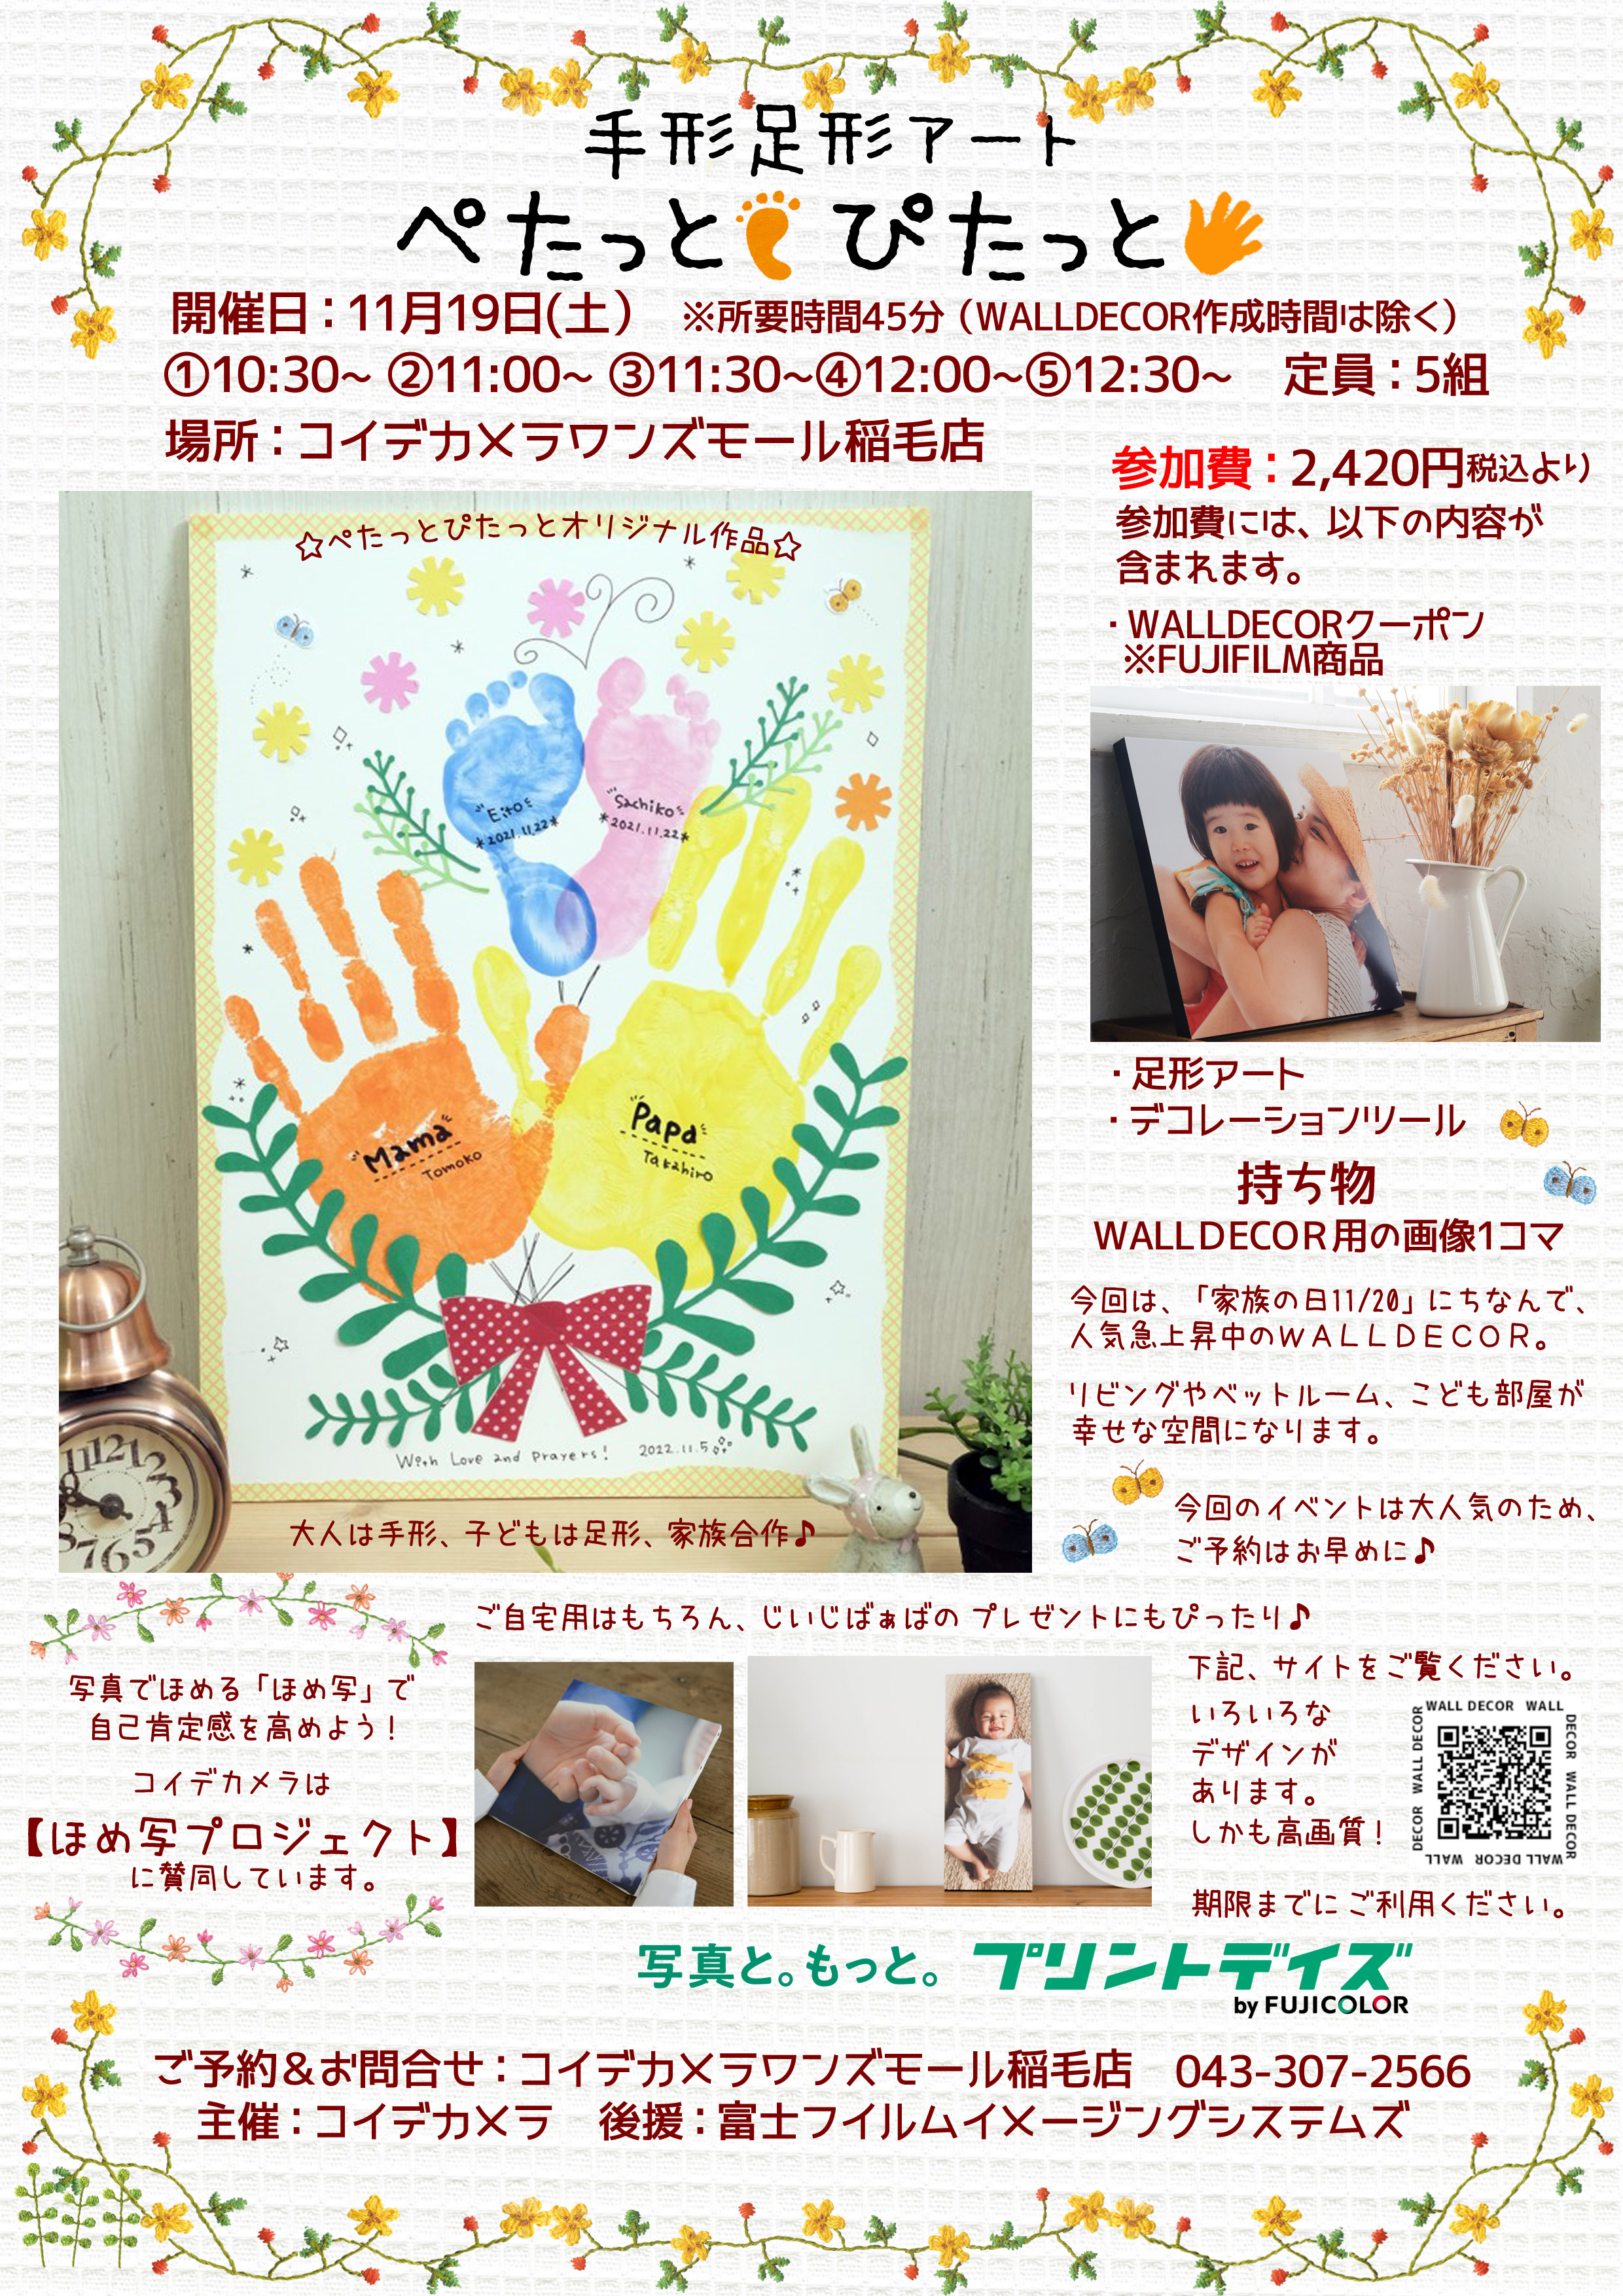  コイデカメラ 家族の手形足形アート開催:イメージ